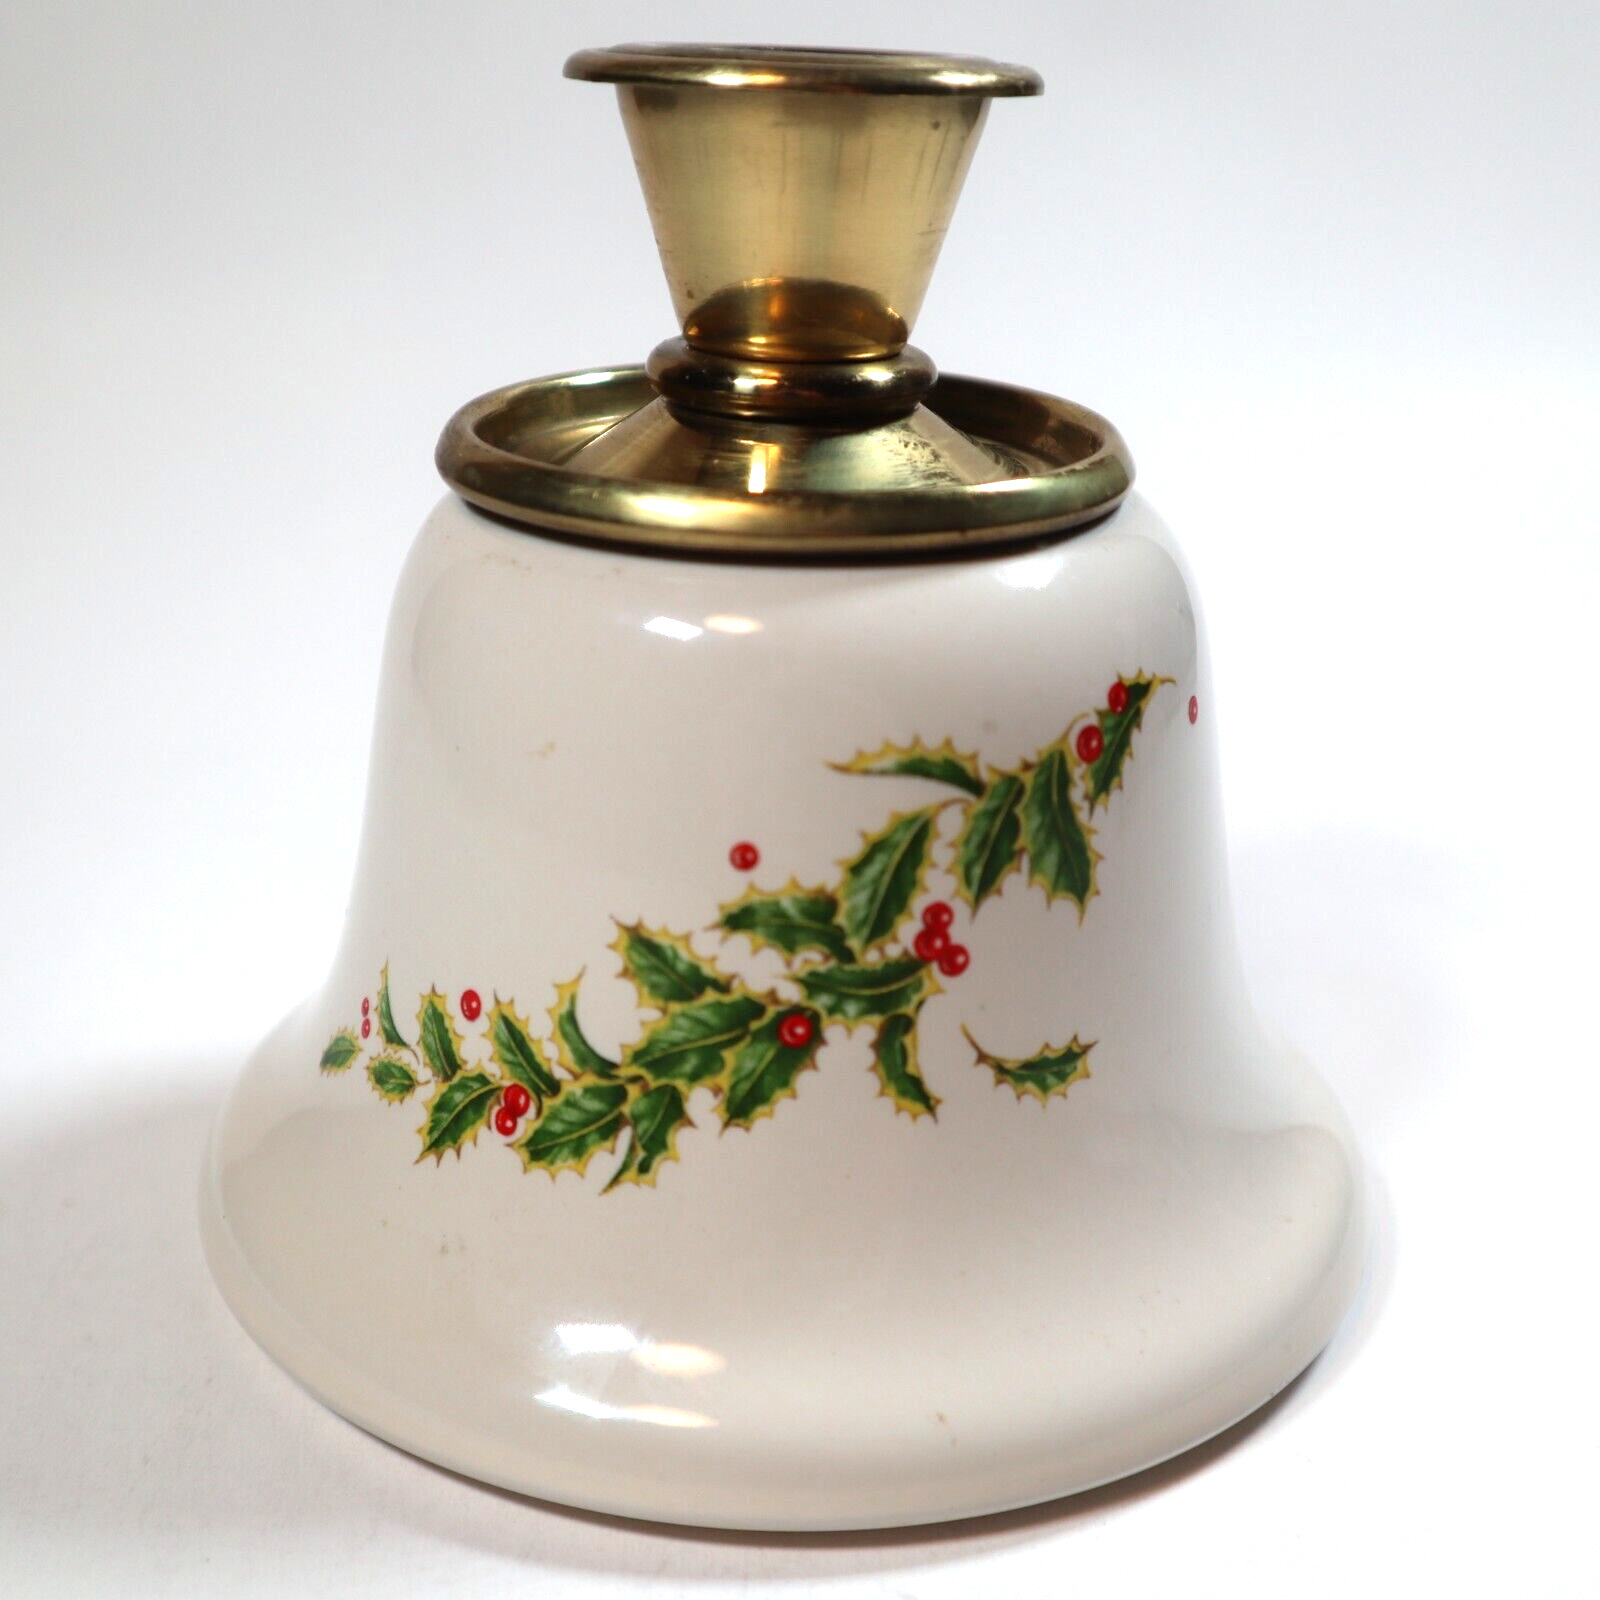 VTG Porcelain Holly Candle Holder Festive Christmas XMas Holiday Decoration